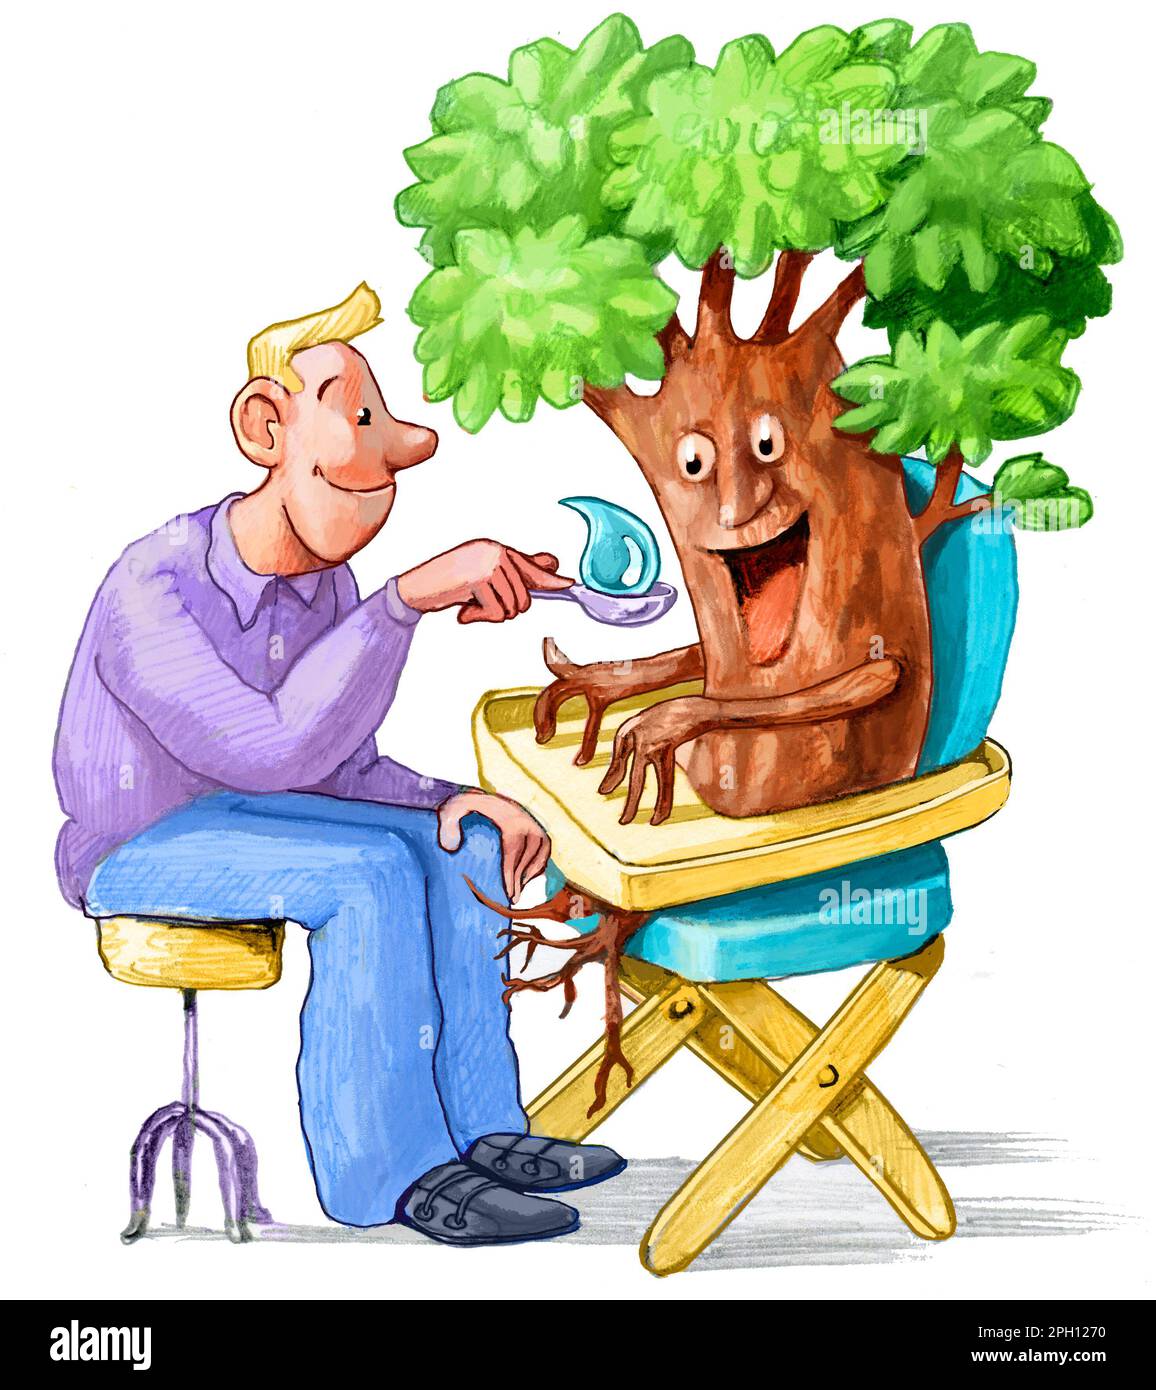 Ein Mann füttert einen Baum in einem Hochstuhl mit Wasser, als wäre es ein Kind, eine Metapher für die Bedeutung von Wasser für die Rettung von Wäldern und das Überleben Stockfoto